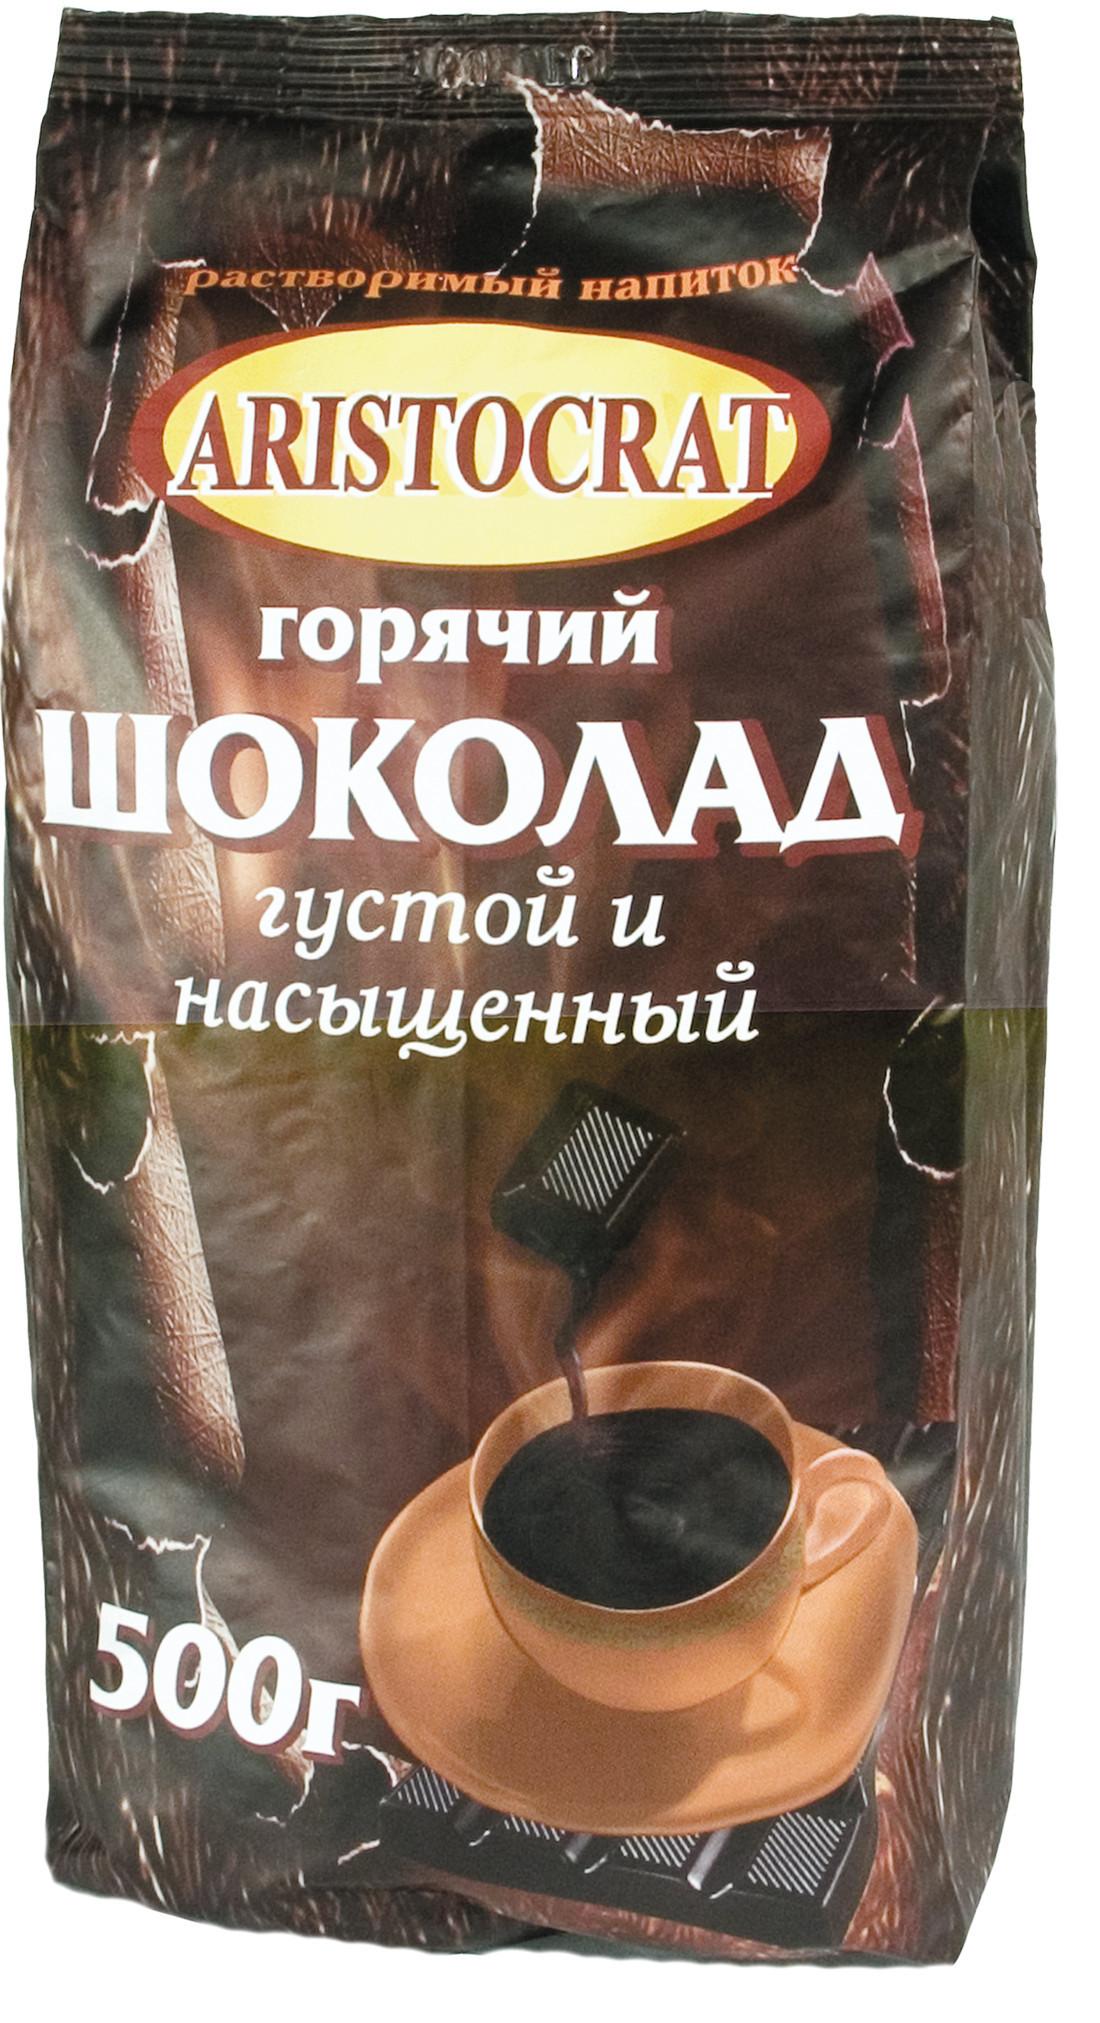 Шоколад горячий Aristocrat растворимый 500 гр., флоу-пак